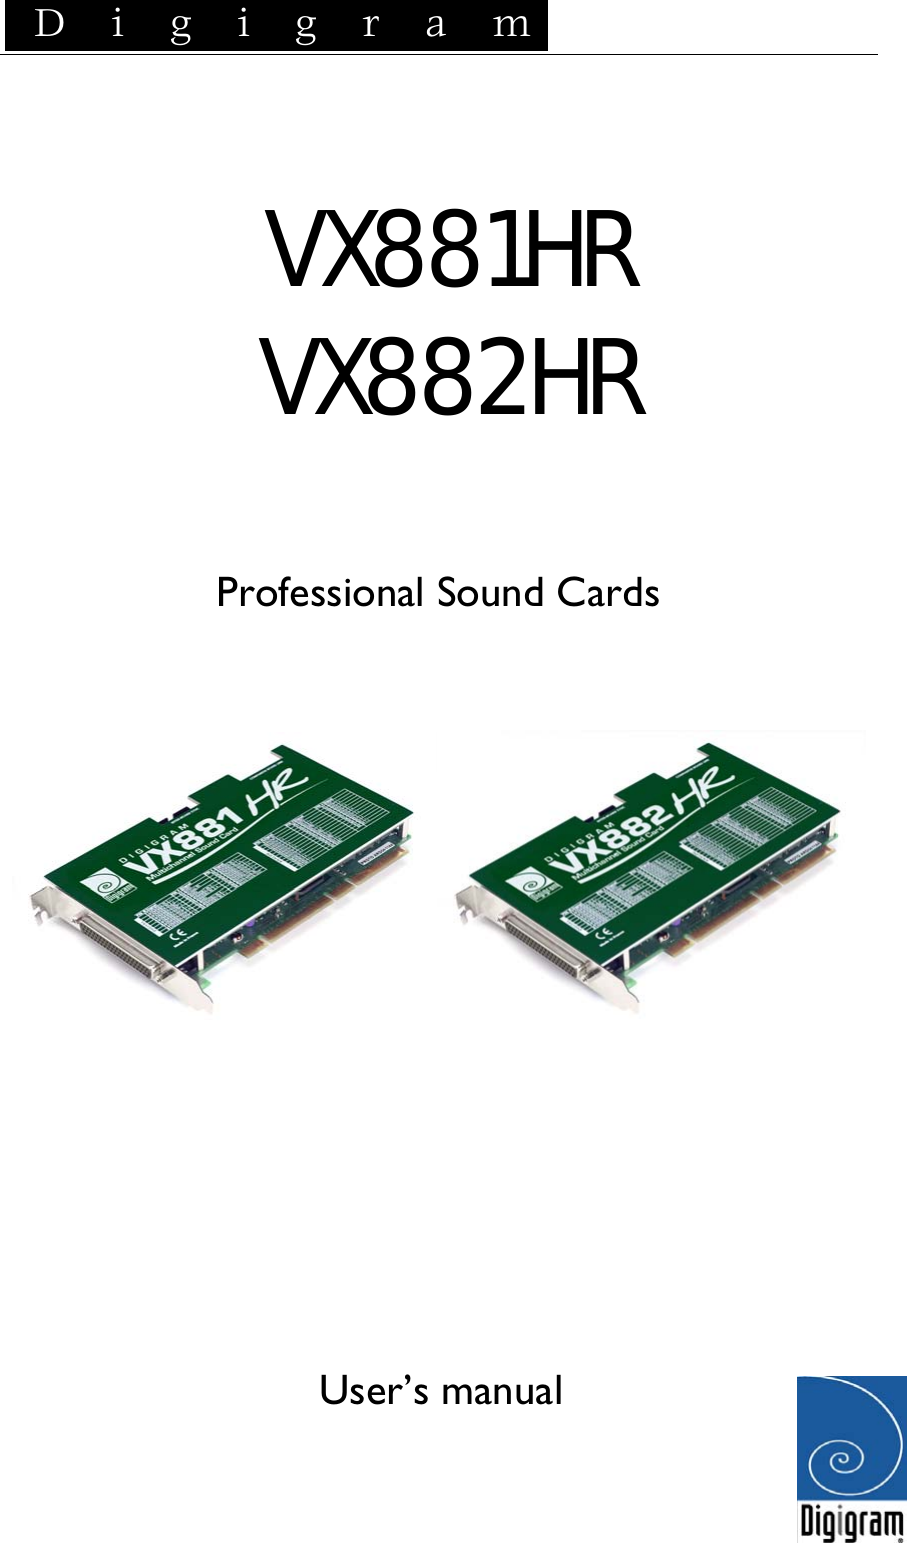  D i g i g r a m    VX881HR VX882HR   Professional Sound Cards          User’s manual   